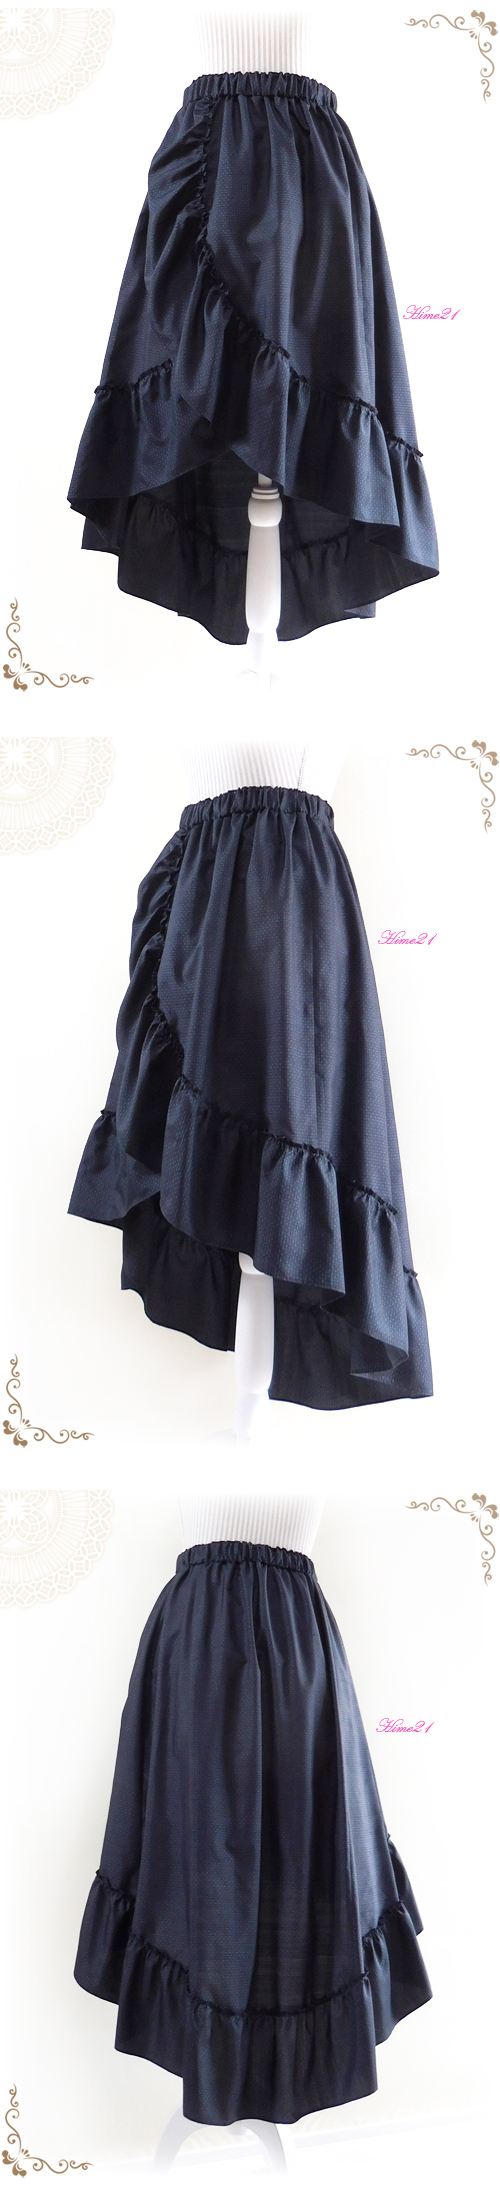 新規購入 大島紬リメイクジャンパースカート&ボレロのセット スーツ 